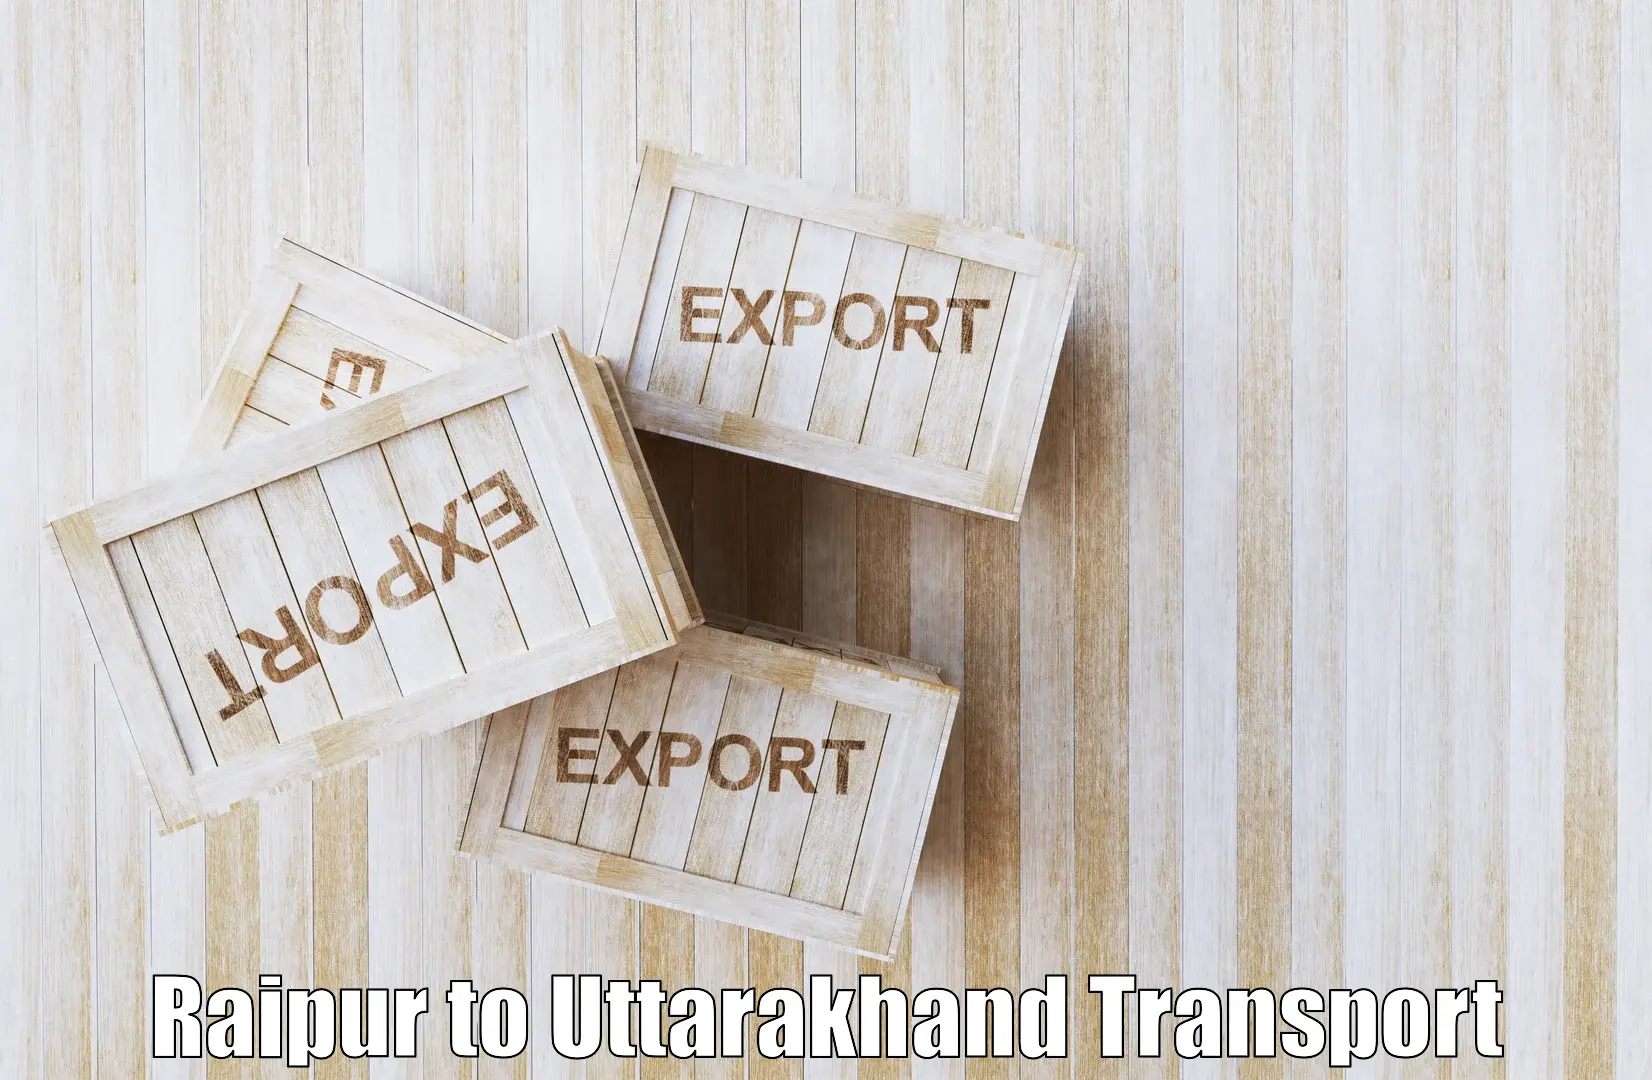 Furniture transport service in Raipur to Kotdwara